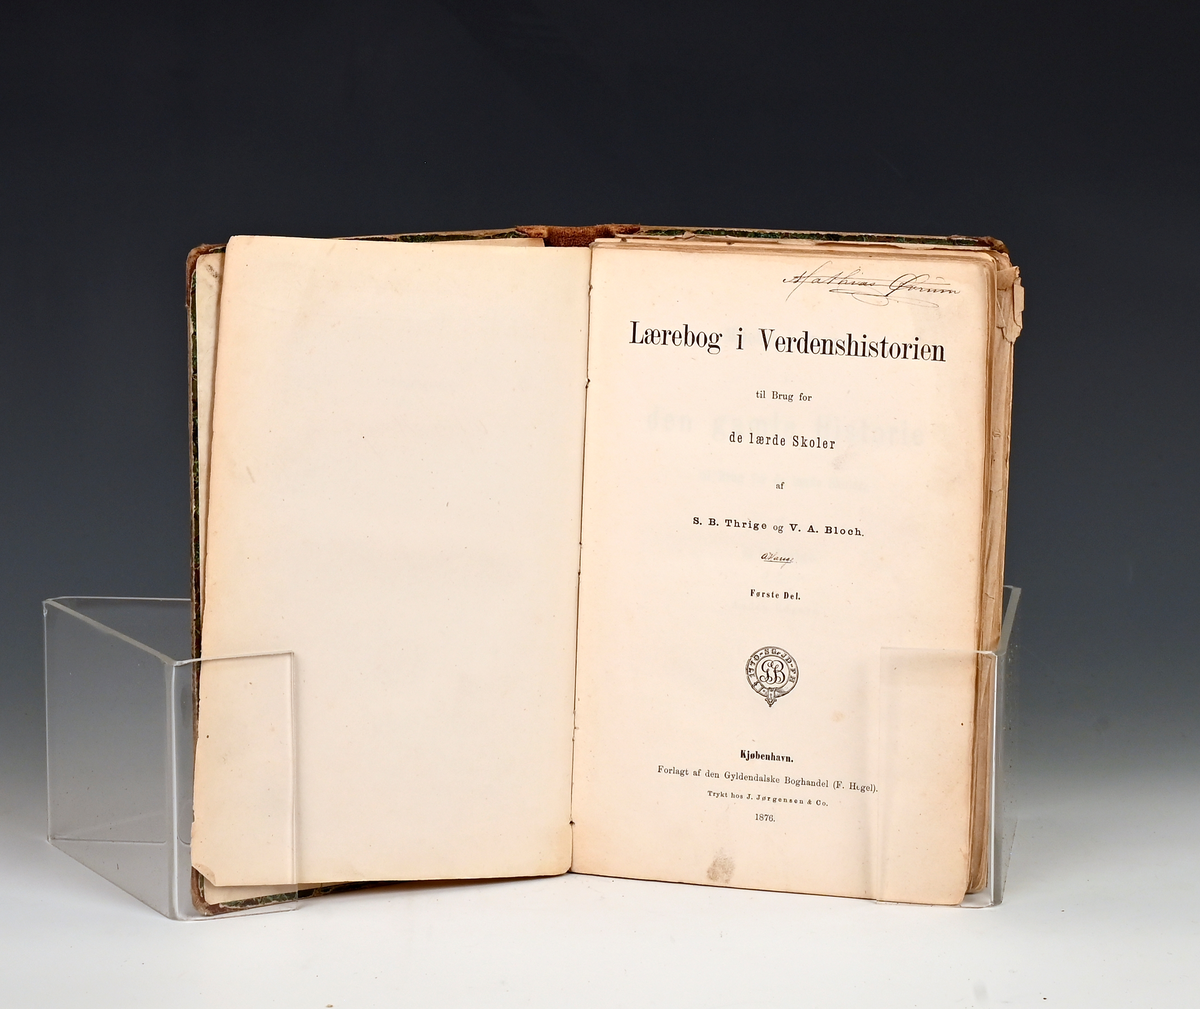 Thrige, S. B. og V. A. Bloch. Lærebog i Verdenshistorien, til brug for de lærde skoler. Kjøbenhavn, 1876.